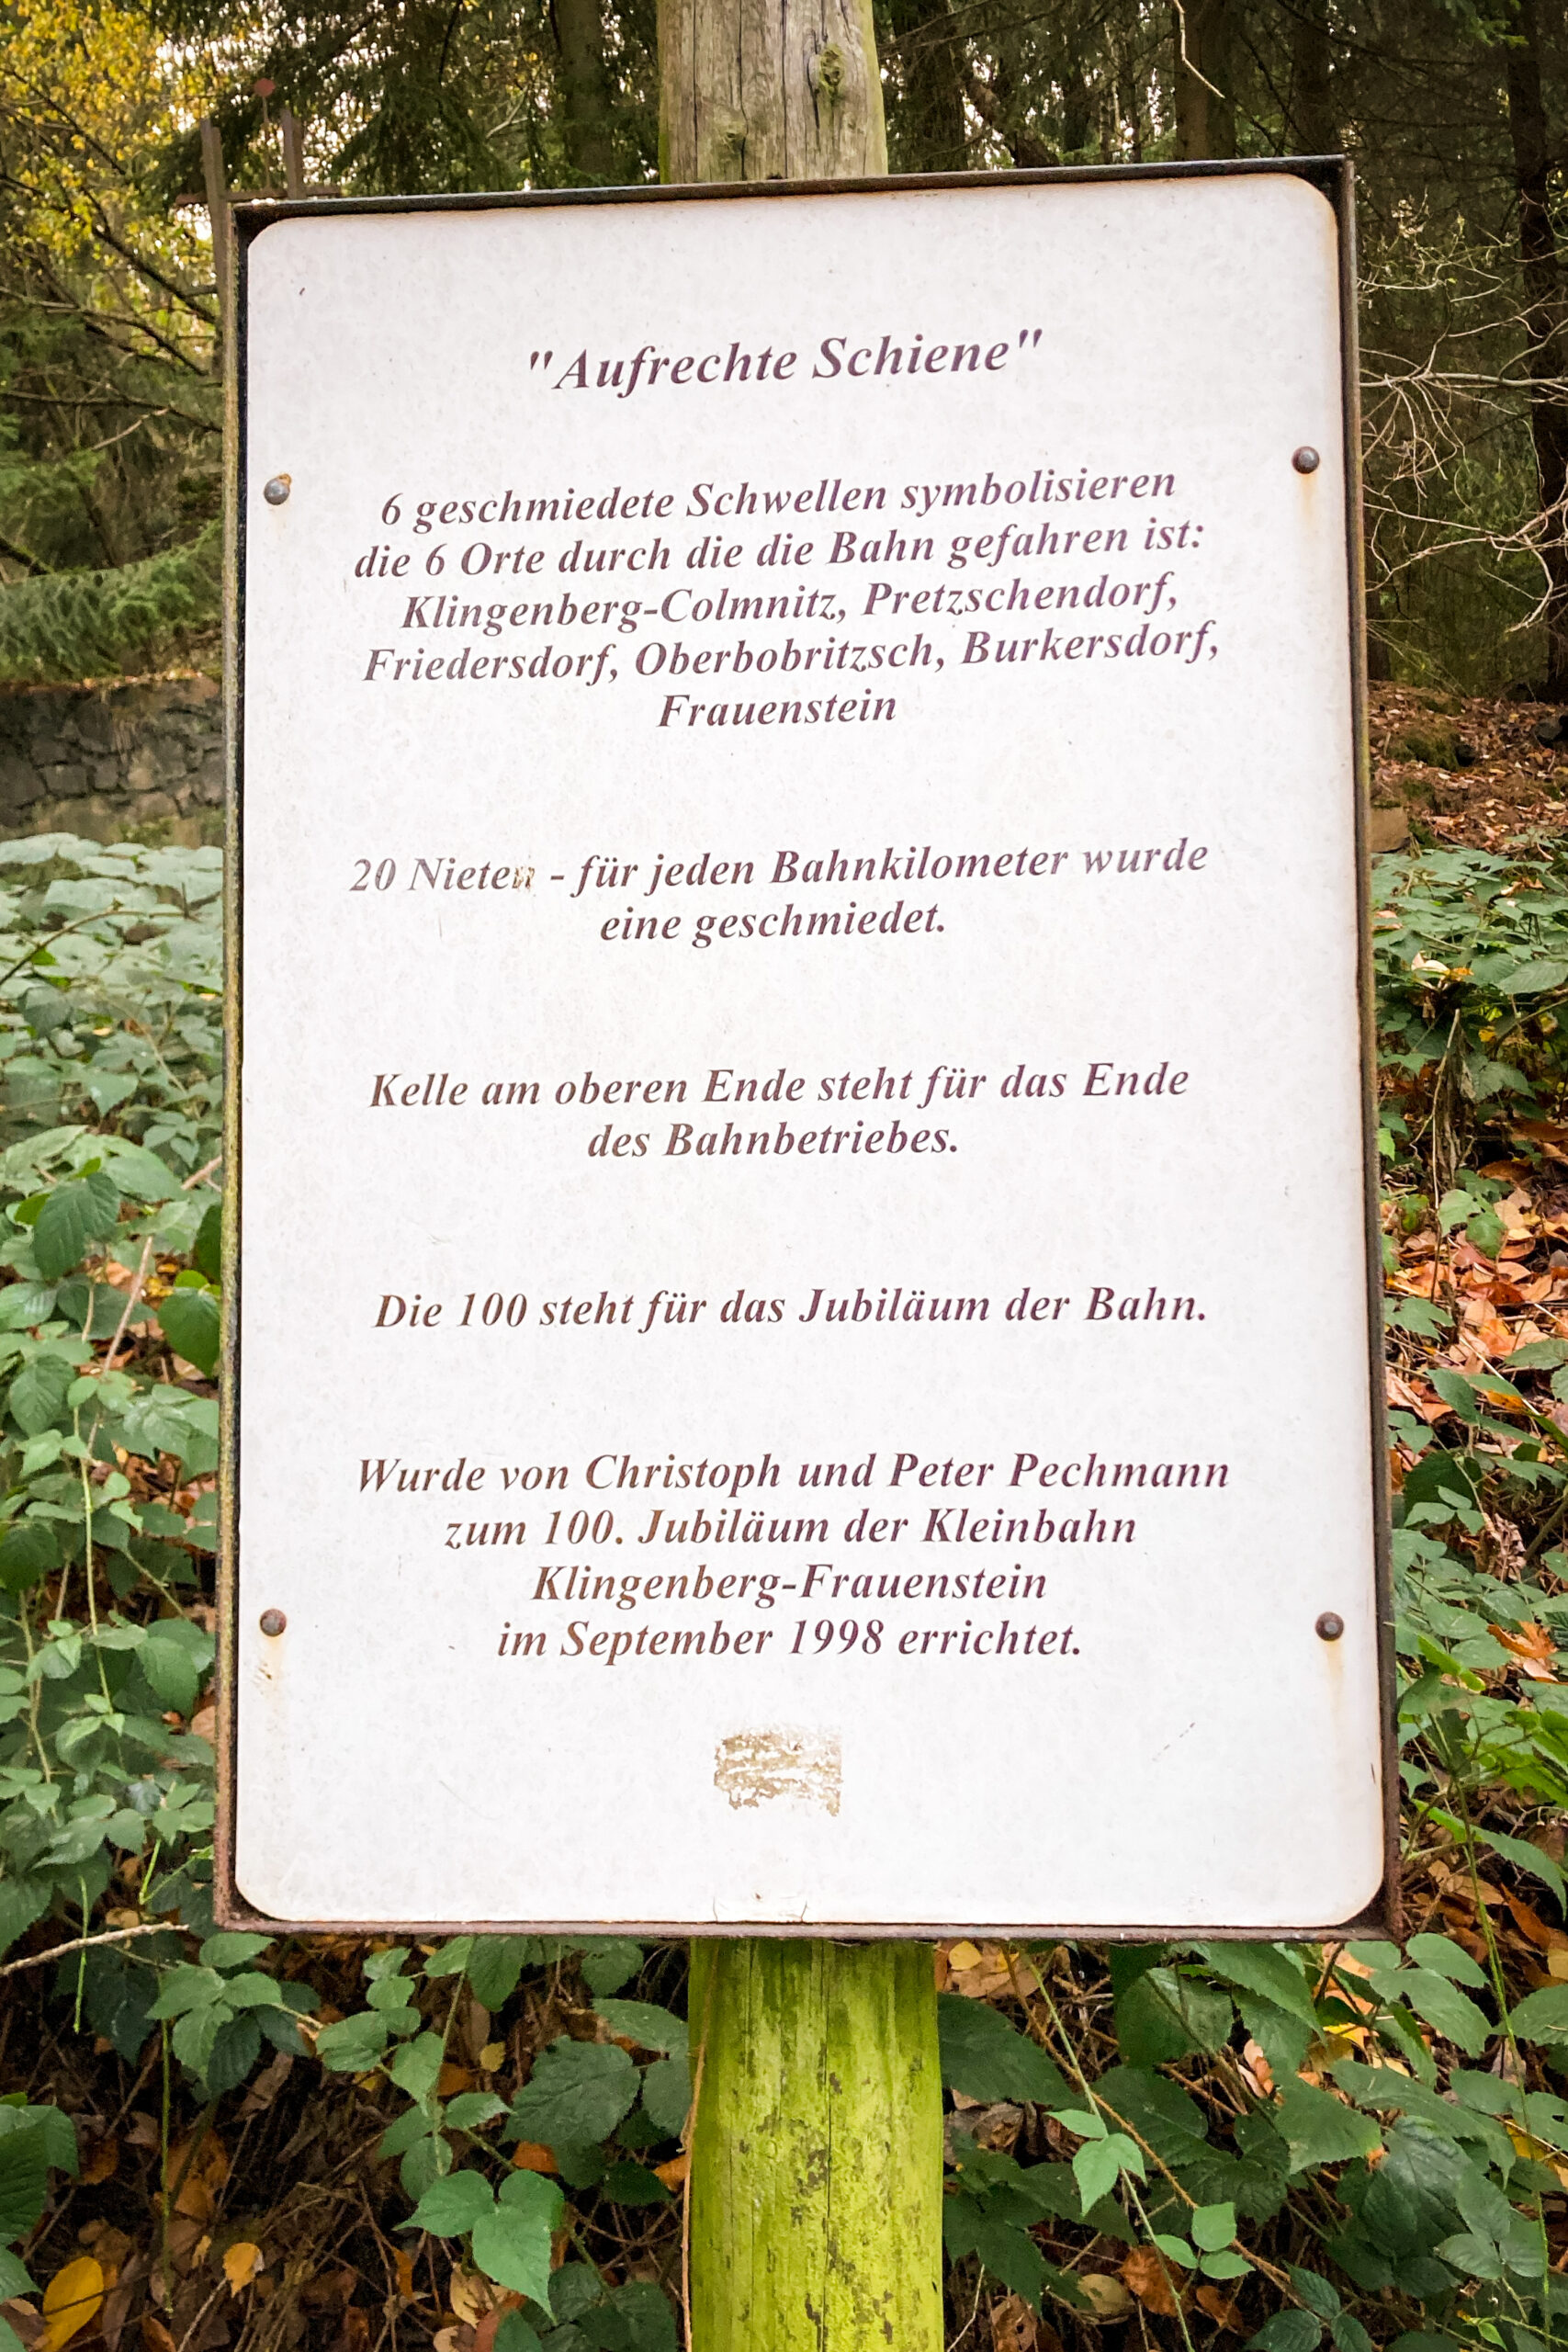 Beschreibung des Kunstwerks "aufrechte Schiene" am Fuße des Turmbergs.